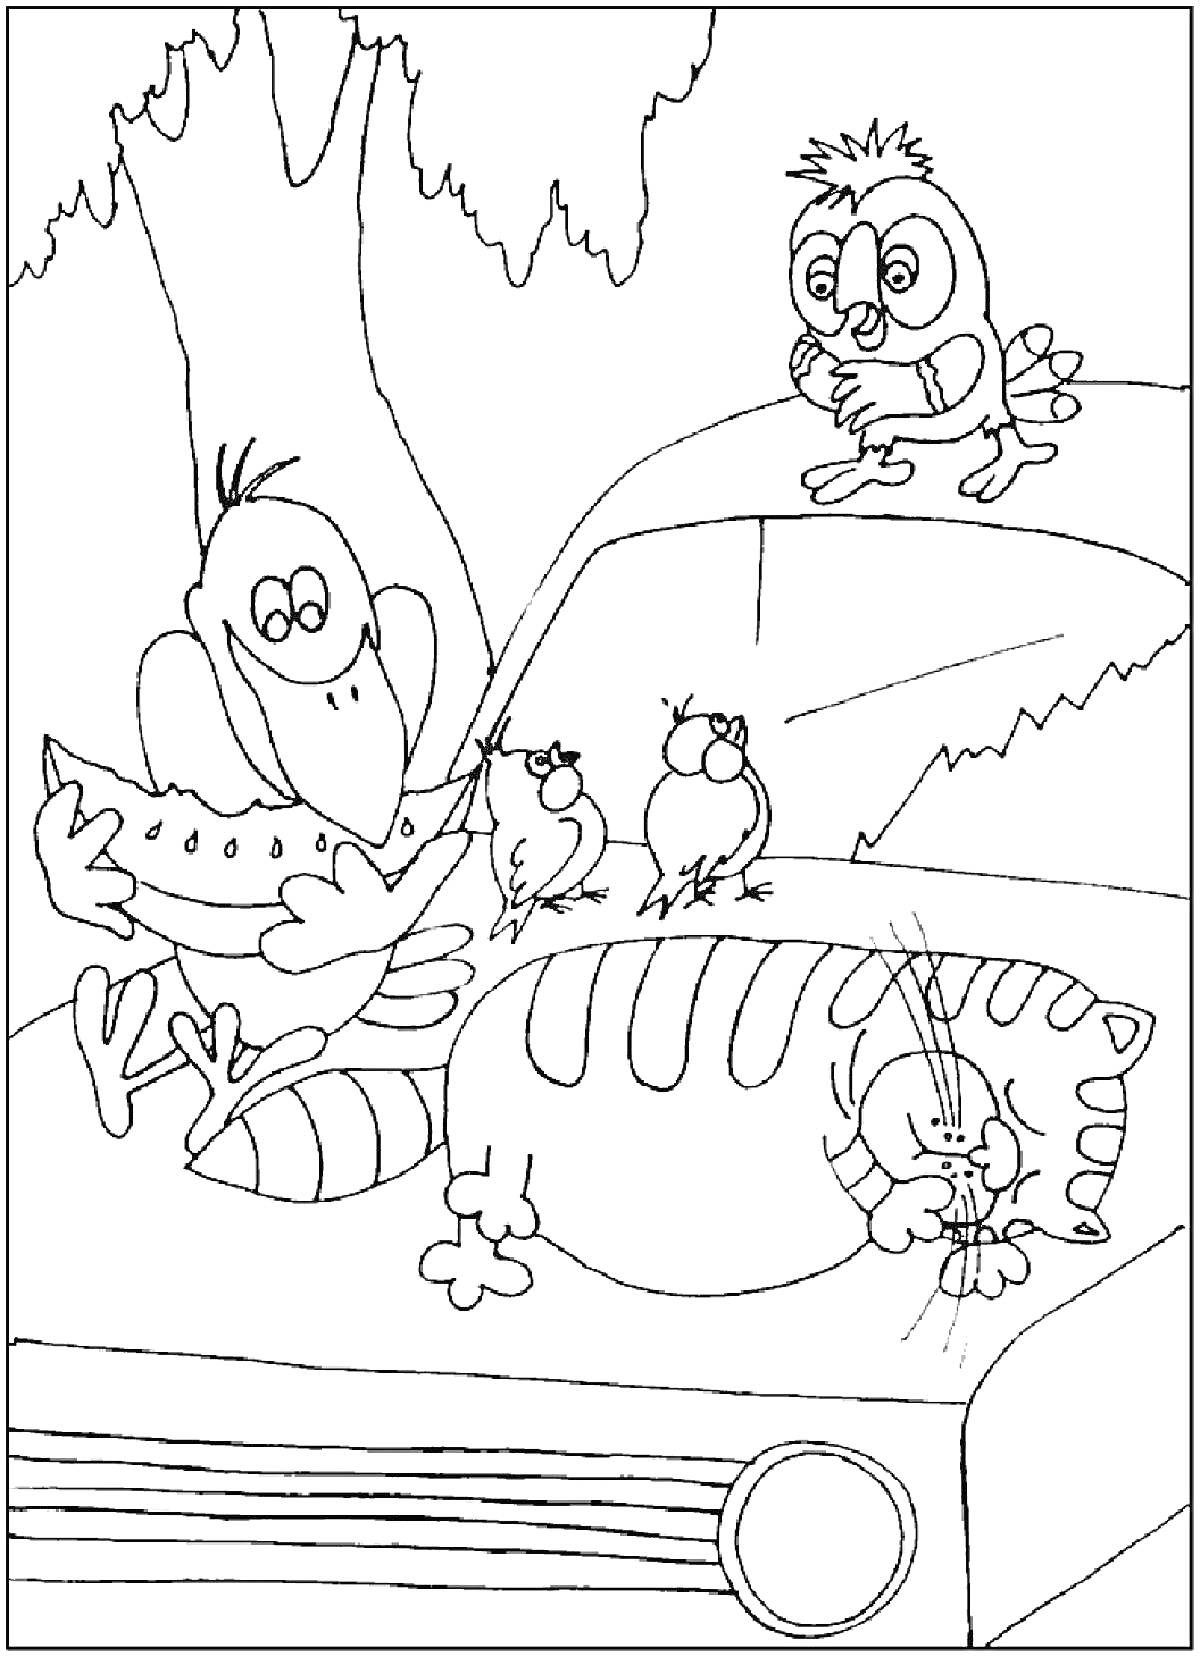 Попугай Кеша, кот, автомобиль и птенцы на дереве